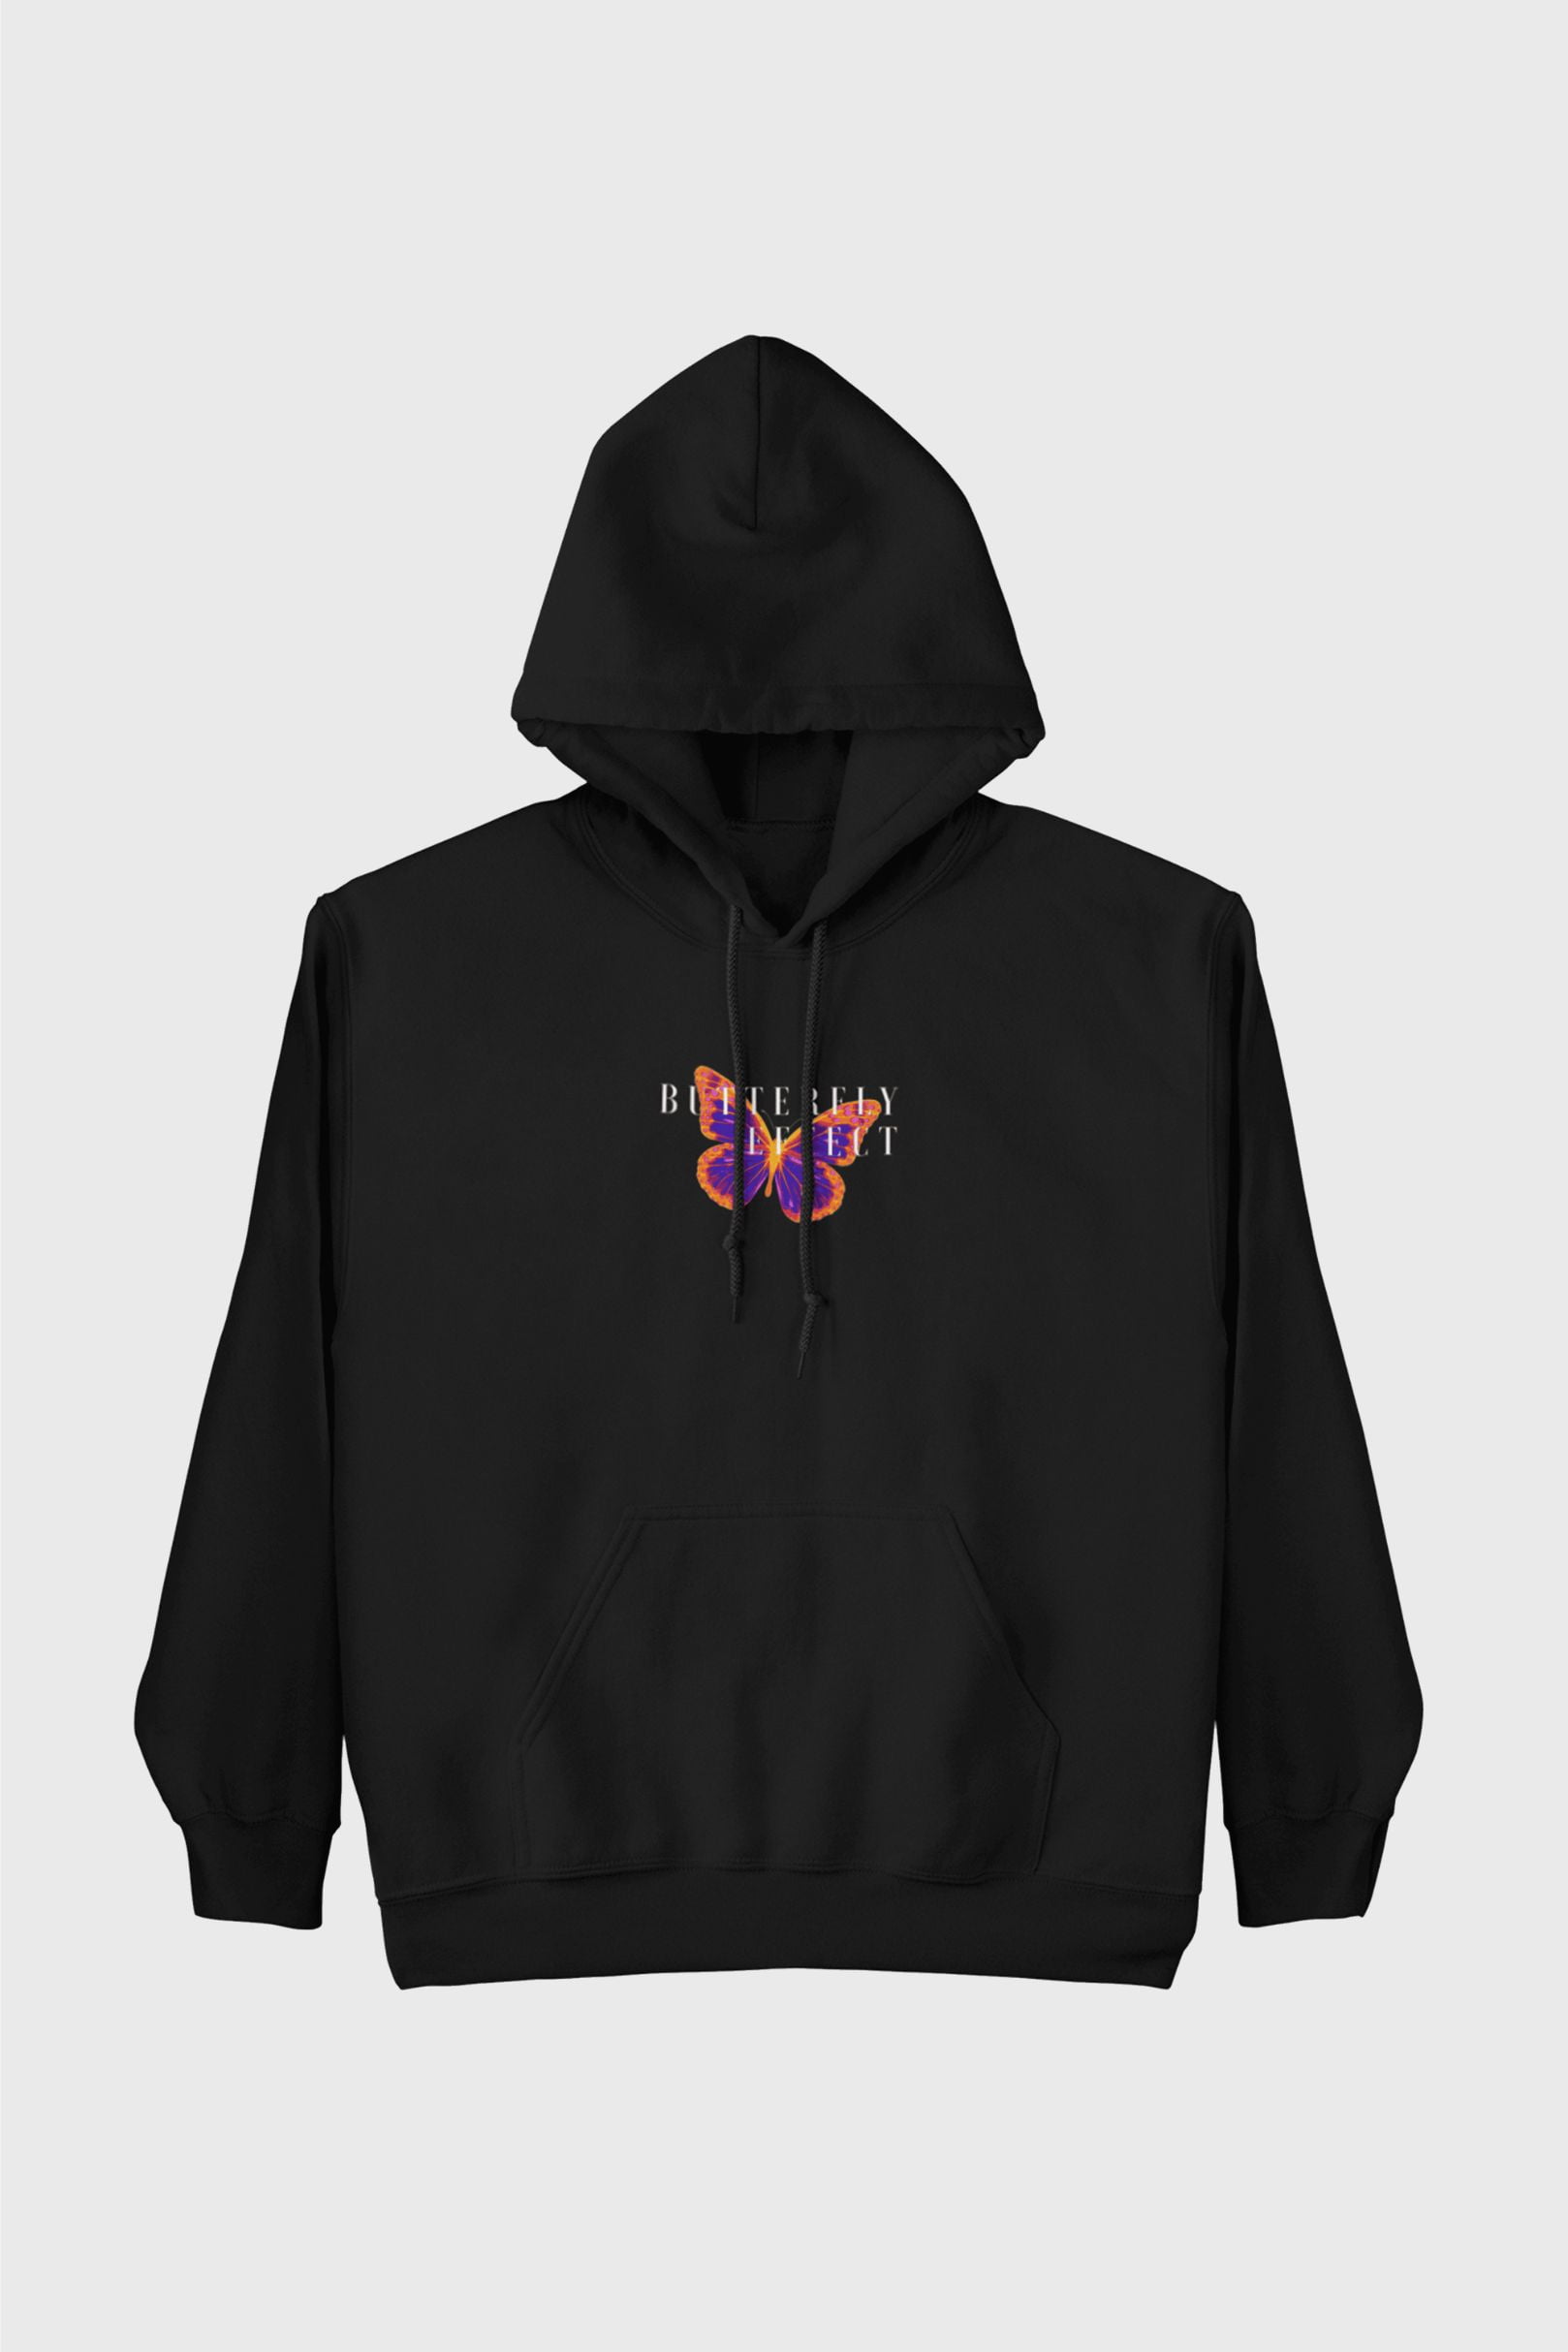 Butterfly effect hoodie